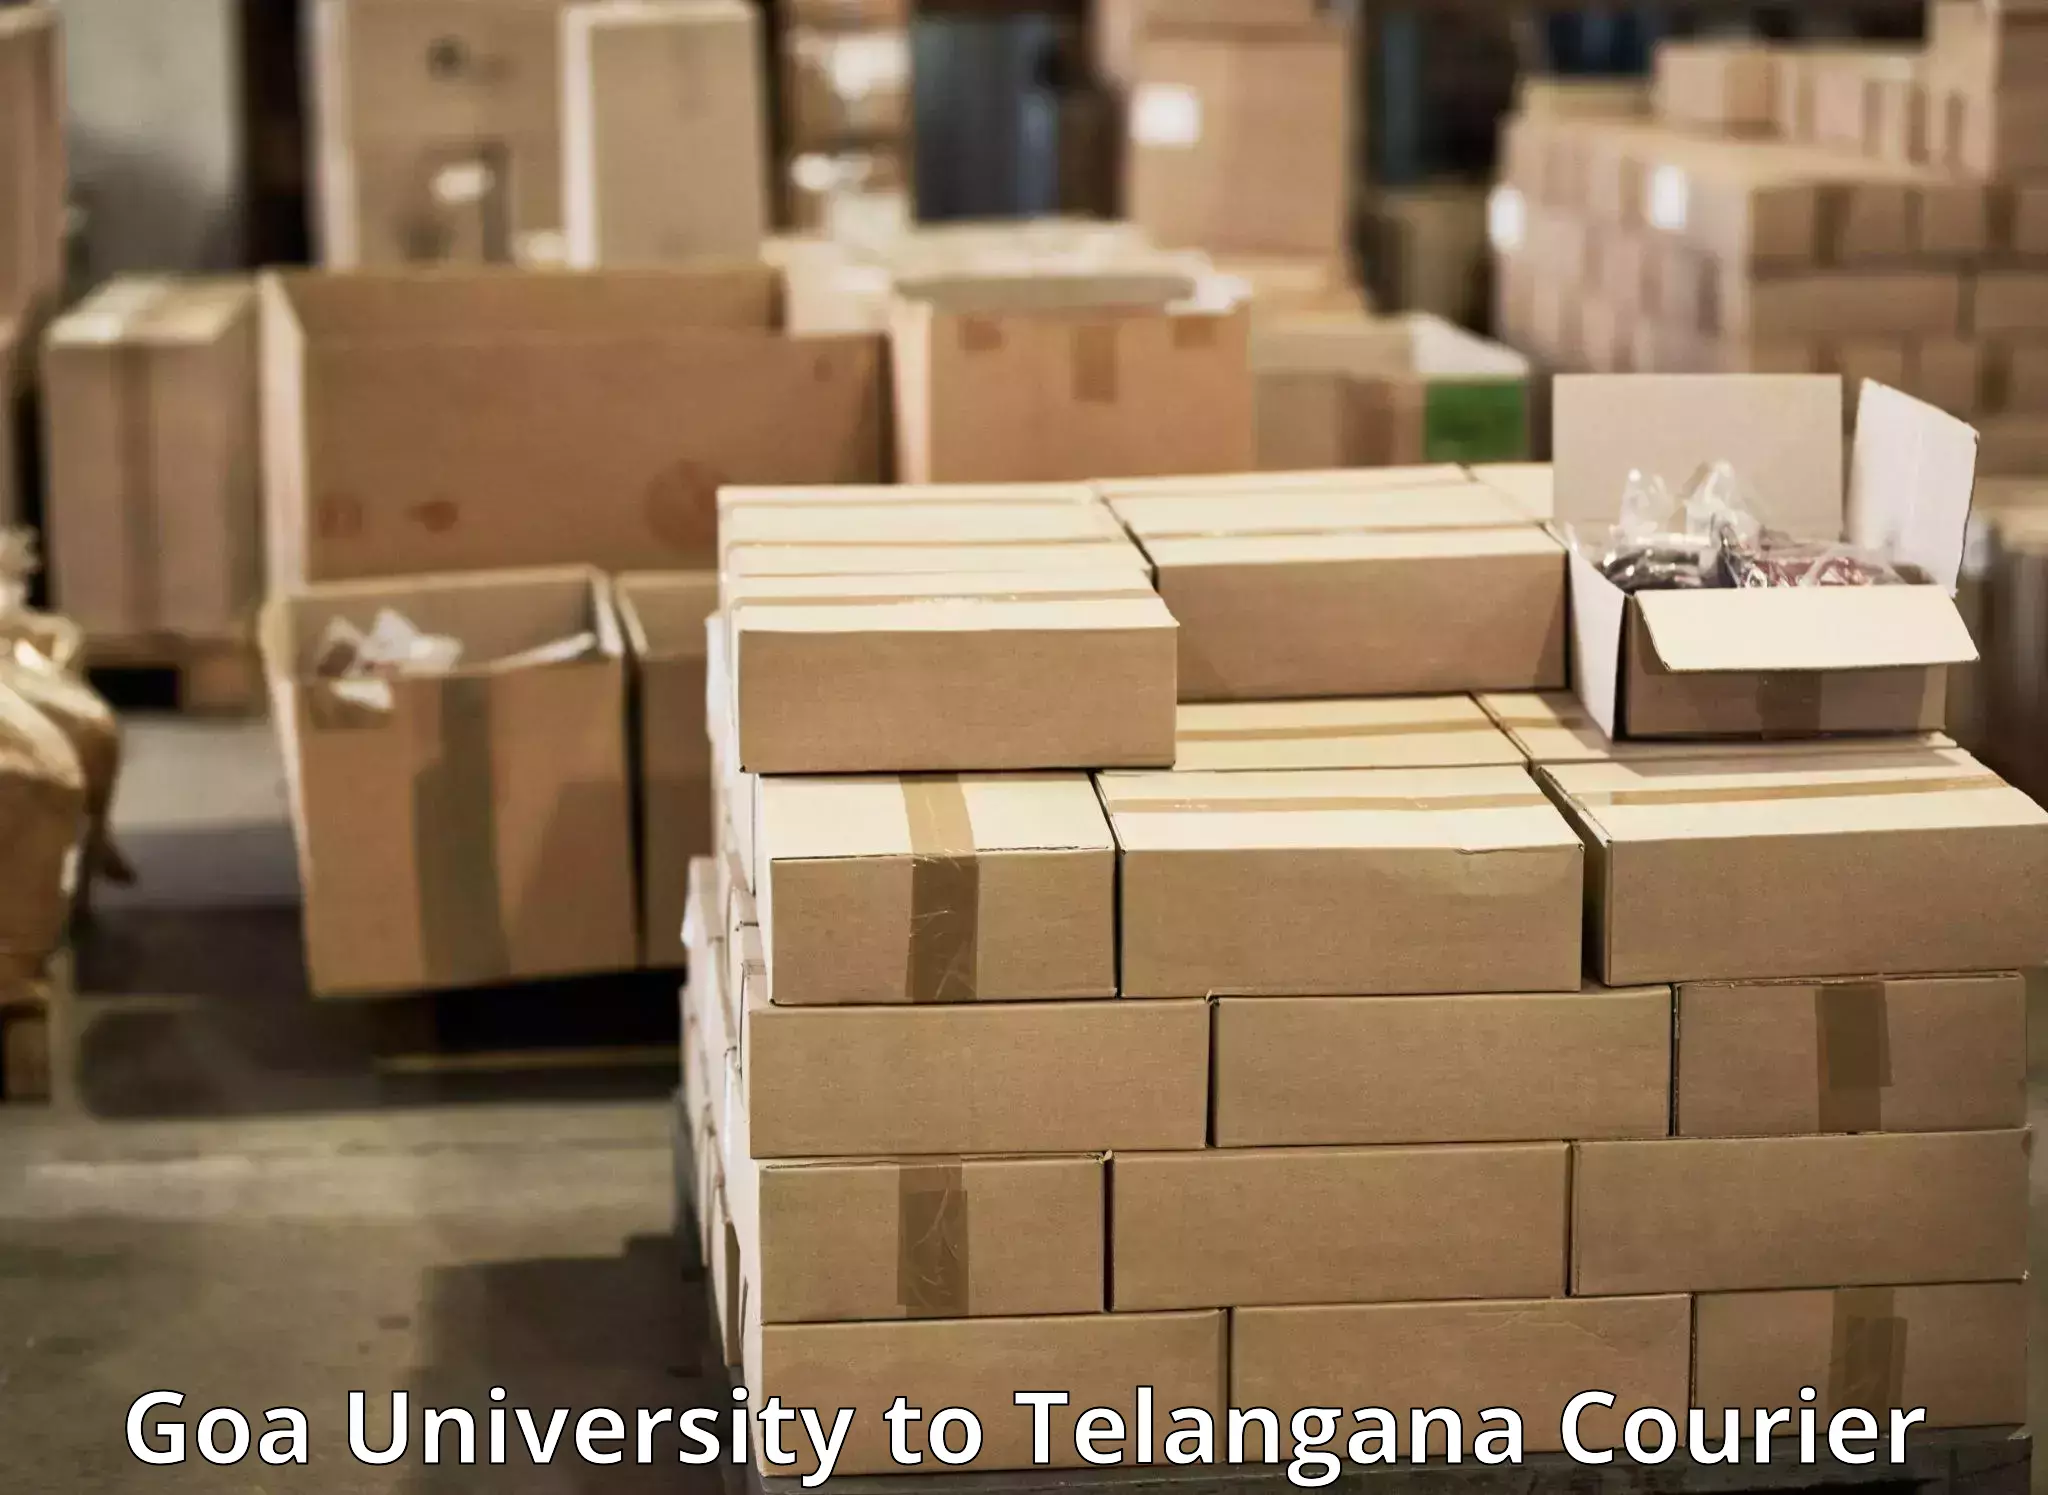 Efficient freight service Goa University to Shamshabad